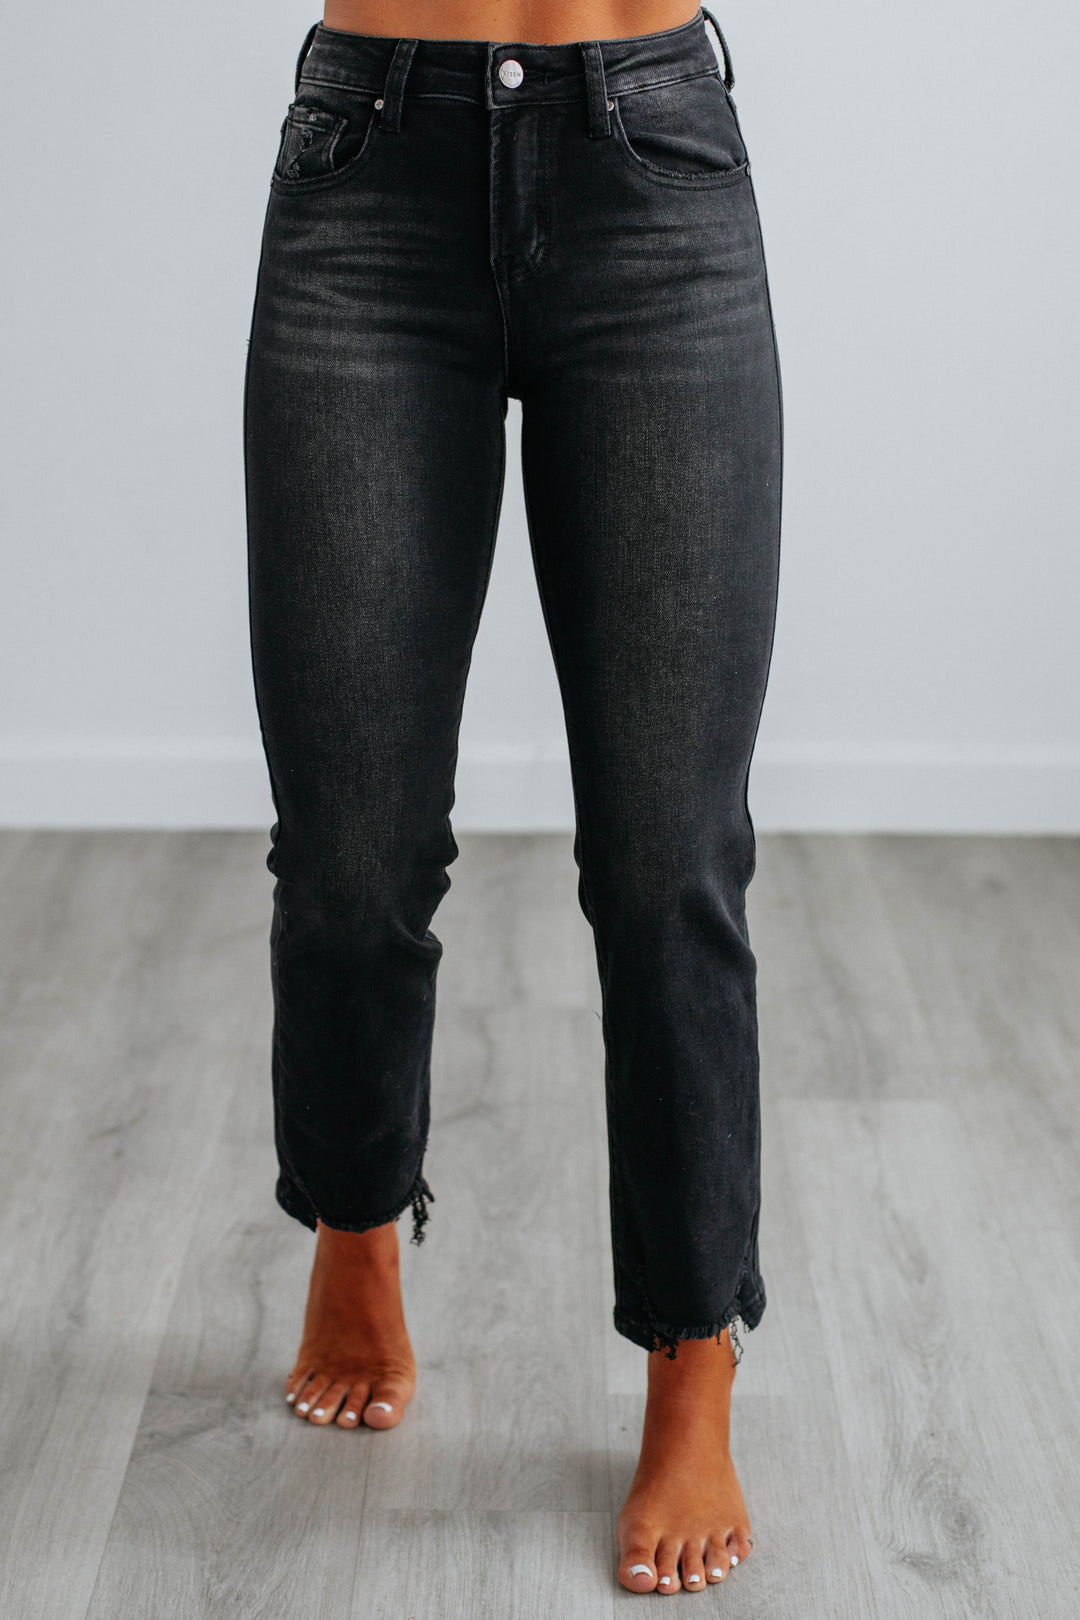 Blaine Risen Jeans - Vintage Black